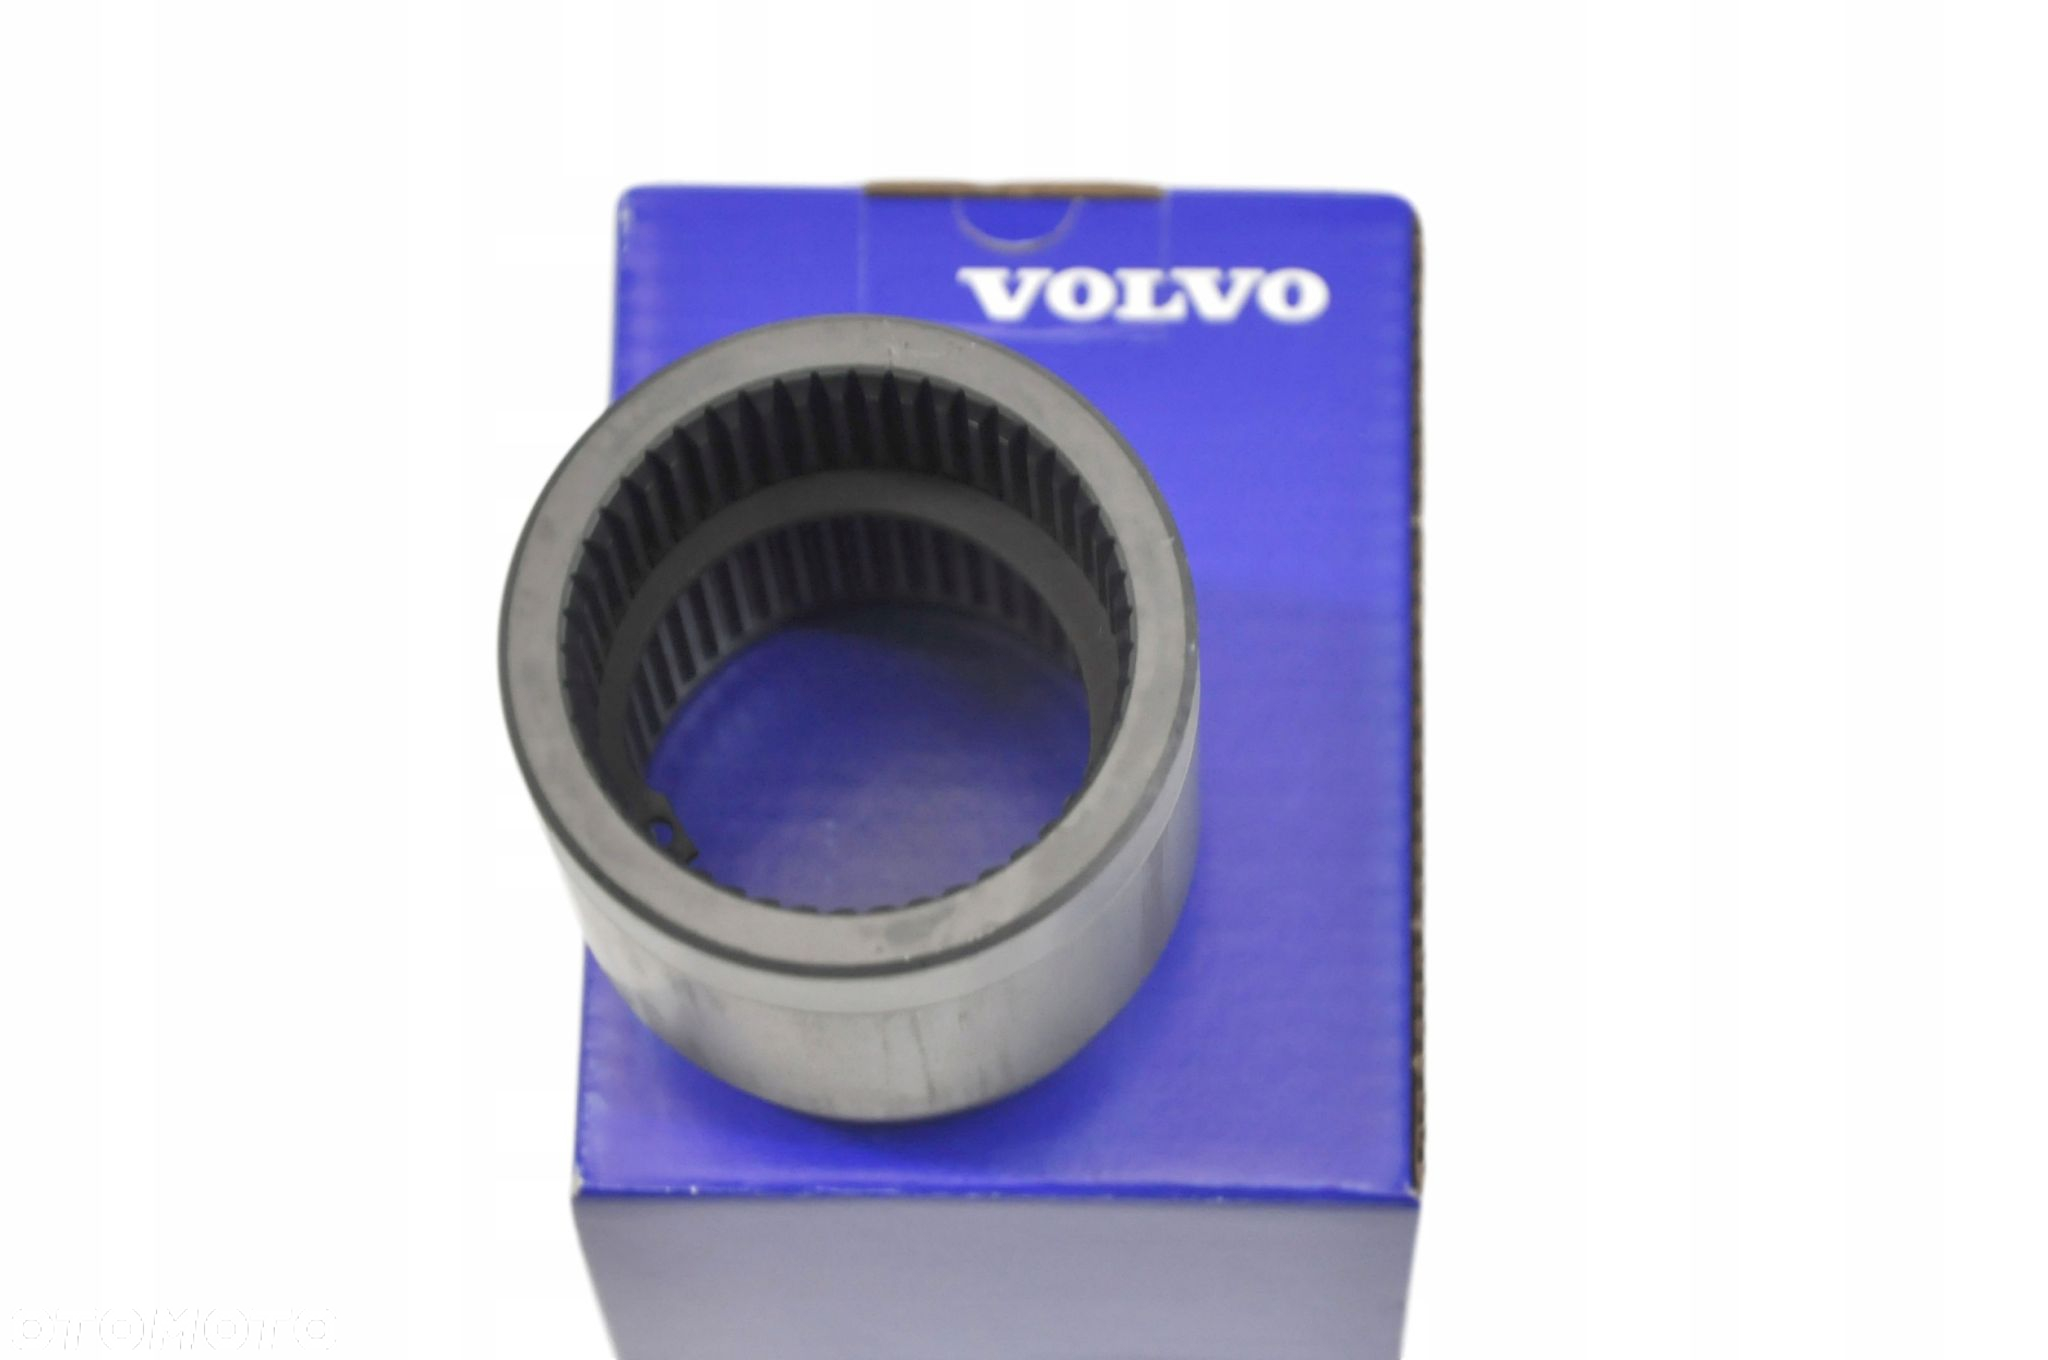 VOLVO XC60 II tuleja przekladni katowej manual OE 31437249 - 2